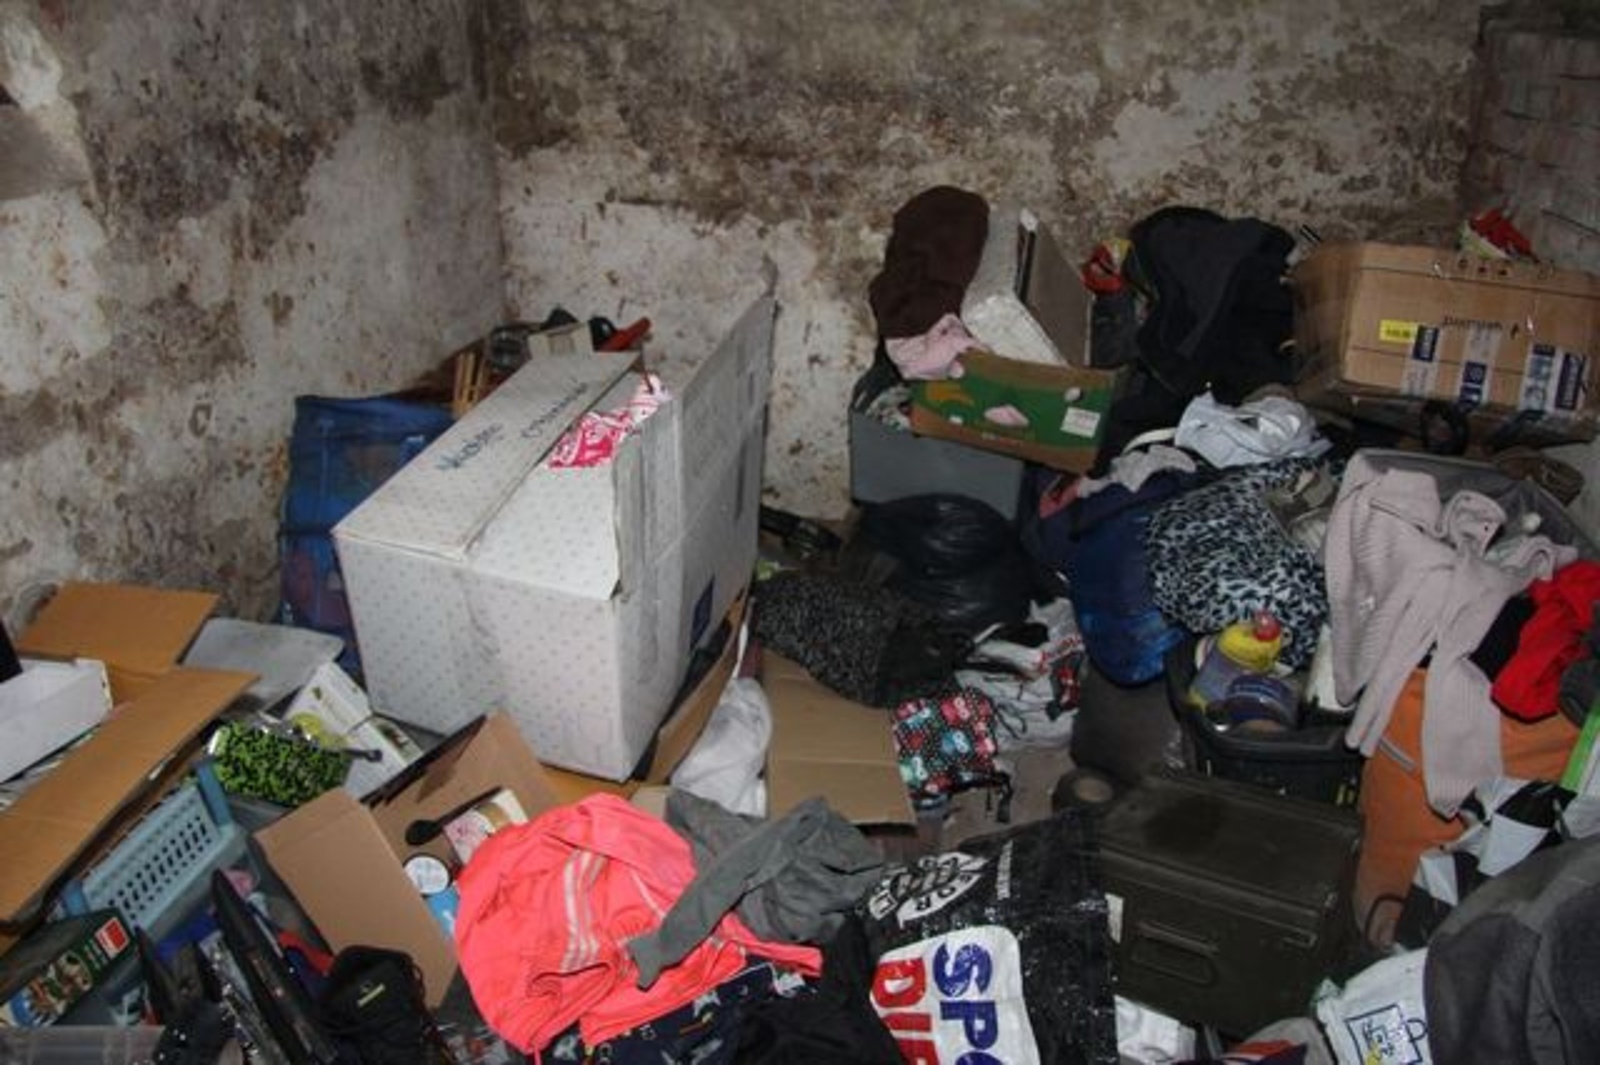 Bezdomovce museli z neobydleného domu ve Zlíně vystěhovat policisté -  Zlínský deník